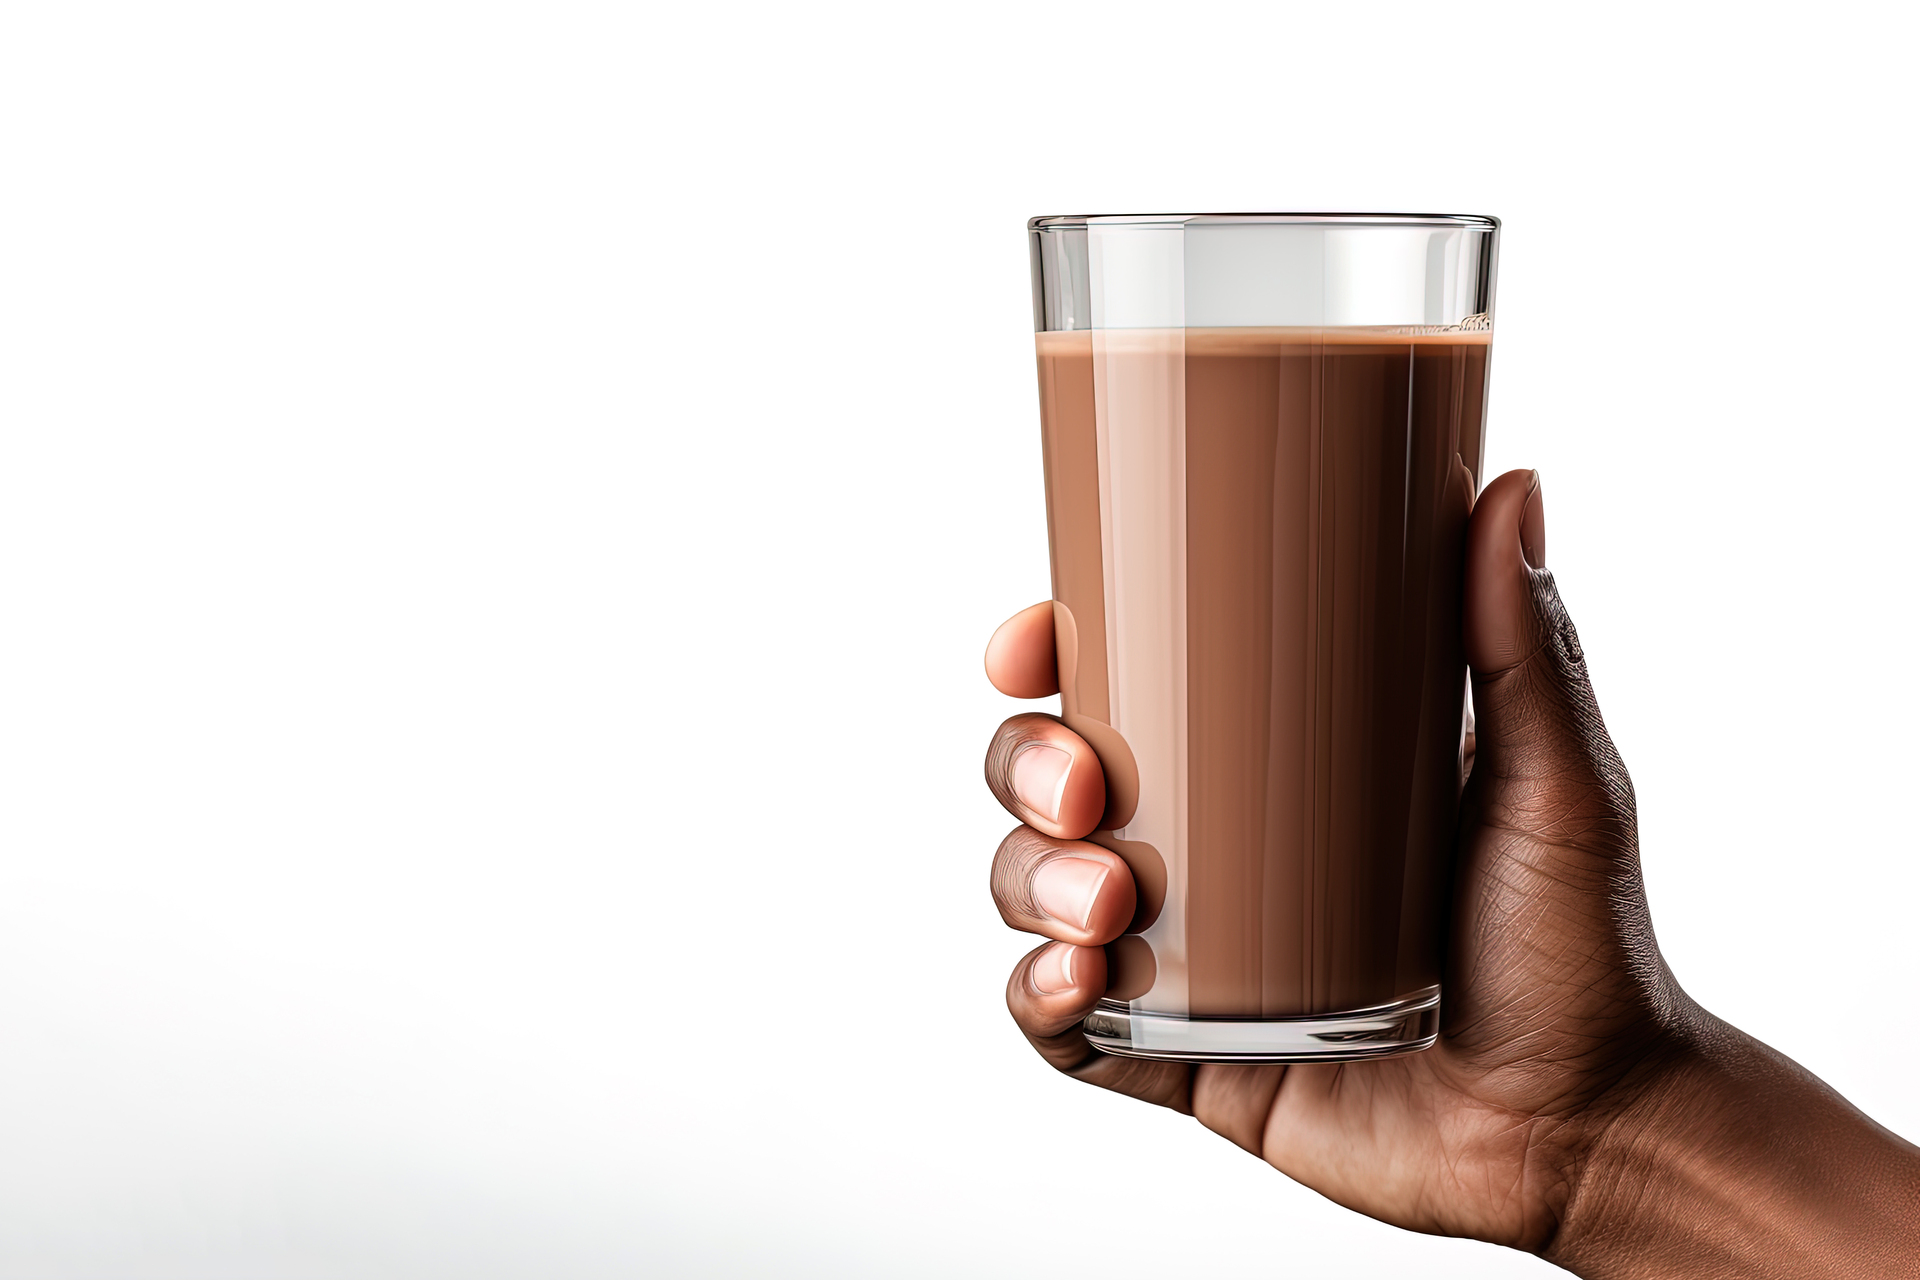 Ten urokliwy obrazek przedstawia szklankę gorącego kakao z mlekiem, która wzbudza apetyt swoim wyglądem i kuszącym aromatem. Piana na wierzchu napoju tworzy puszystą warstwę, nadając mu elegancji i przyjemnego efektu wizualnego. Obok szklanki znajduje się łyżeczka z odrobiną kakao, która dodaje intensywności smaku i zapowiada rozkoszne doświadczenie. To zdjęcie, które zaprasza do chwili relaksu i cieszenia się słodko-gorzkim smakiem kakaowego rarytasu w przytulnej atmosferze